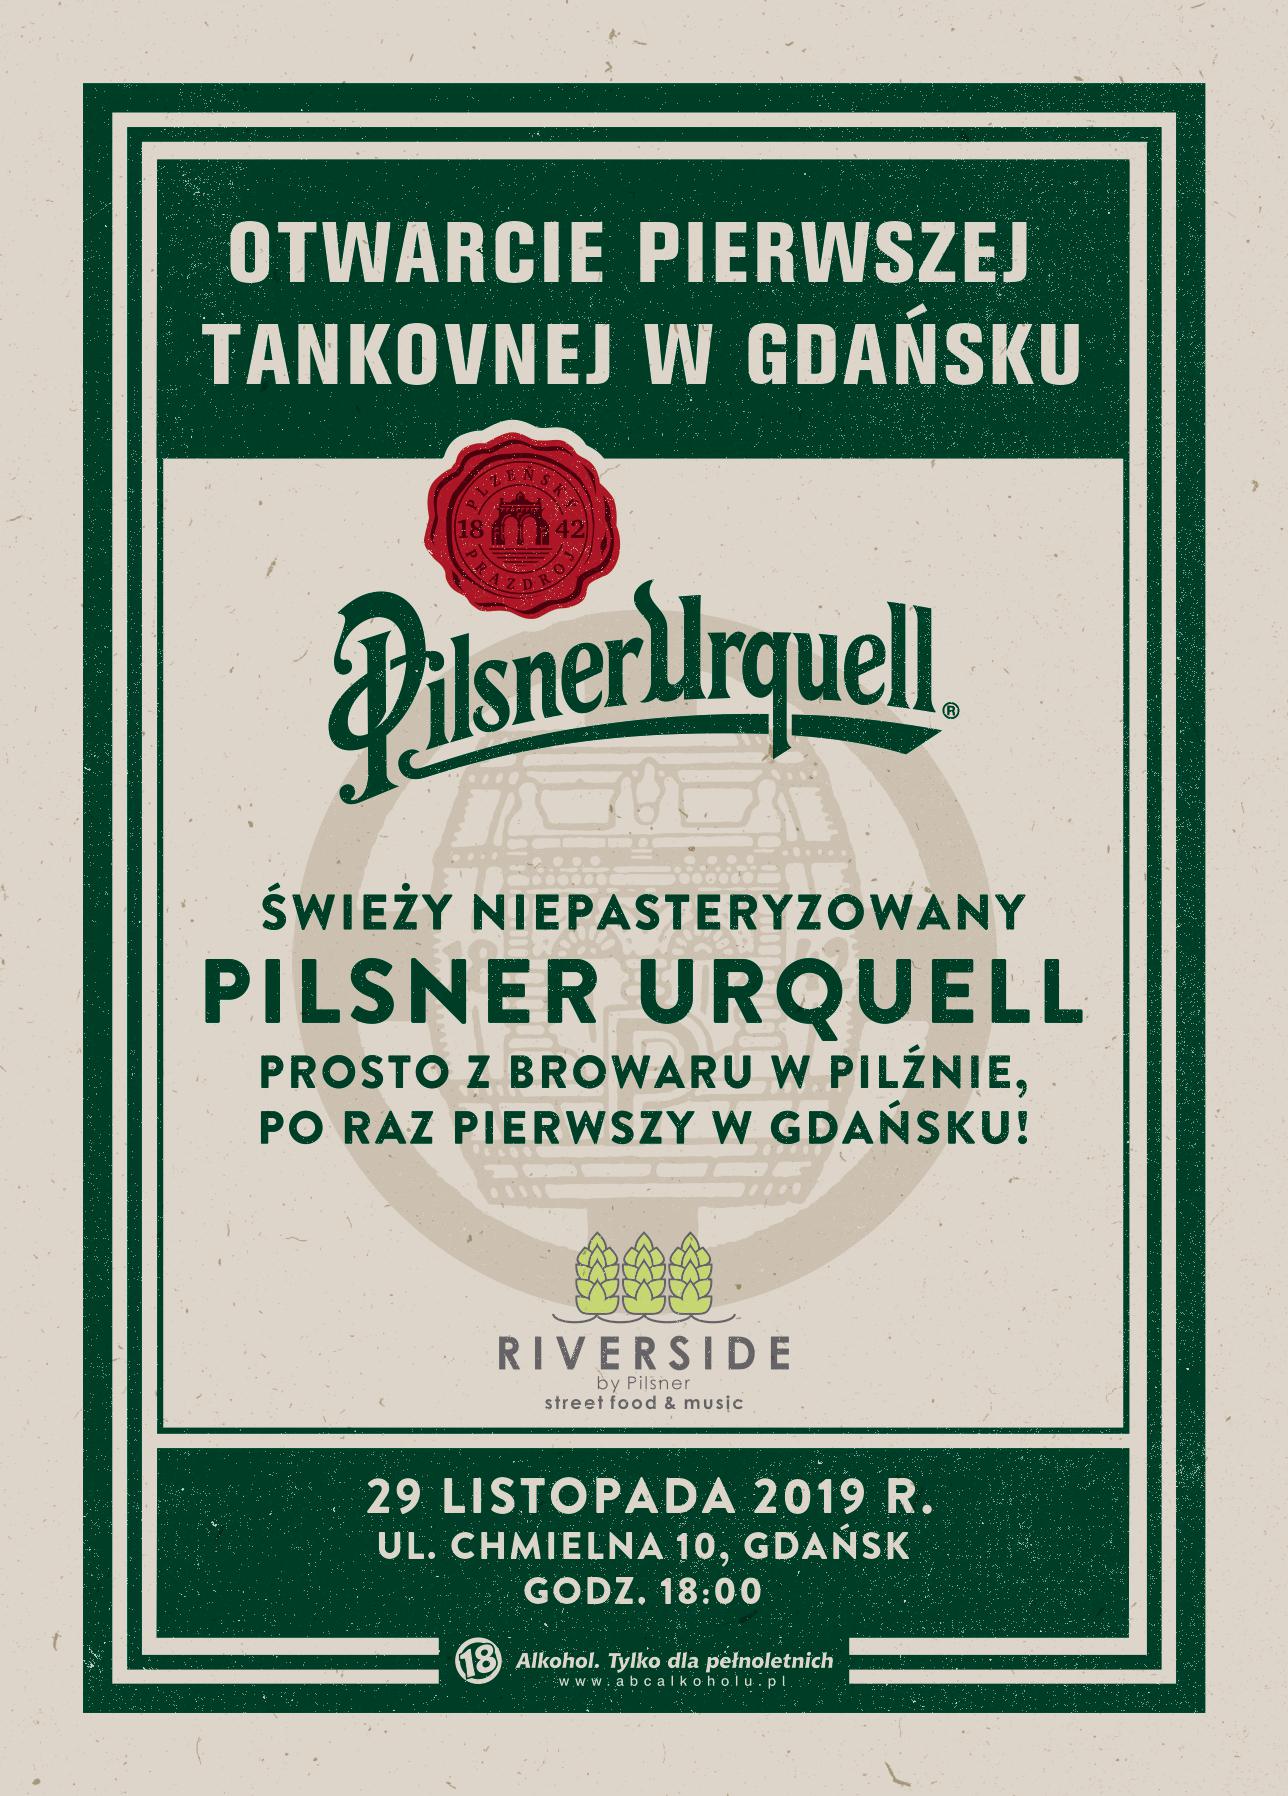 Pierwsza świątynia Pilsnera w Gdańsku! Oficjalne otwarcie Tankovnej Riverside by Pilsner